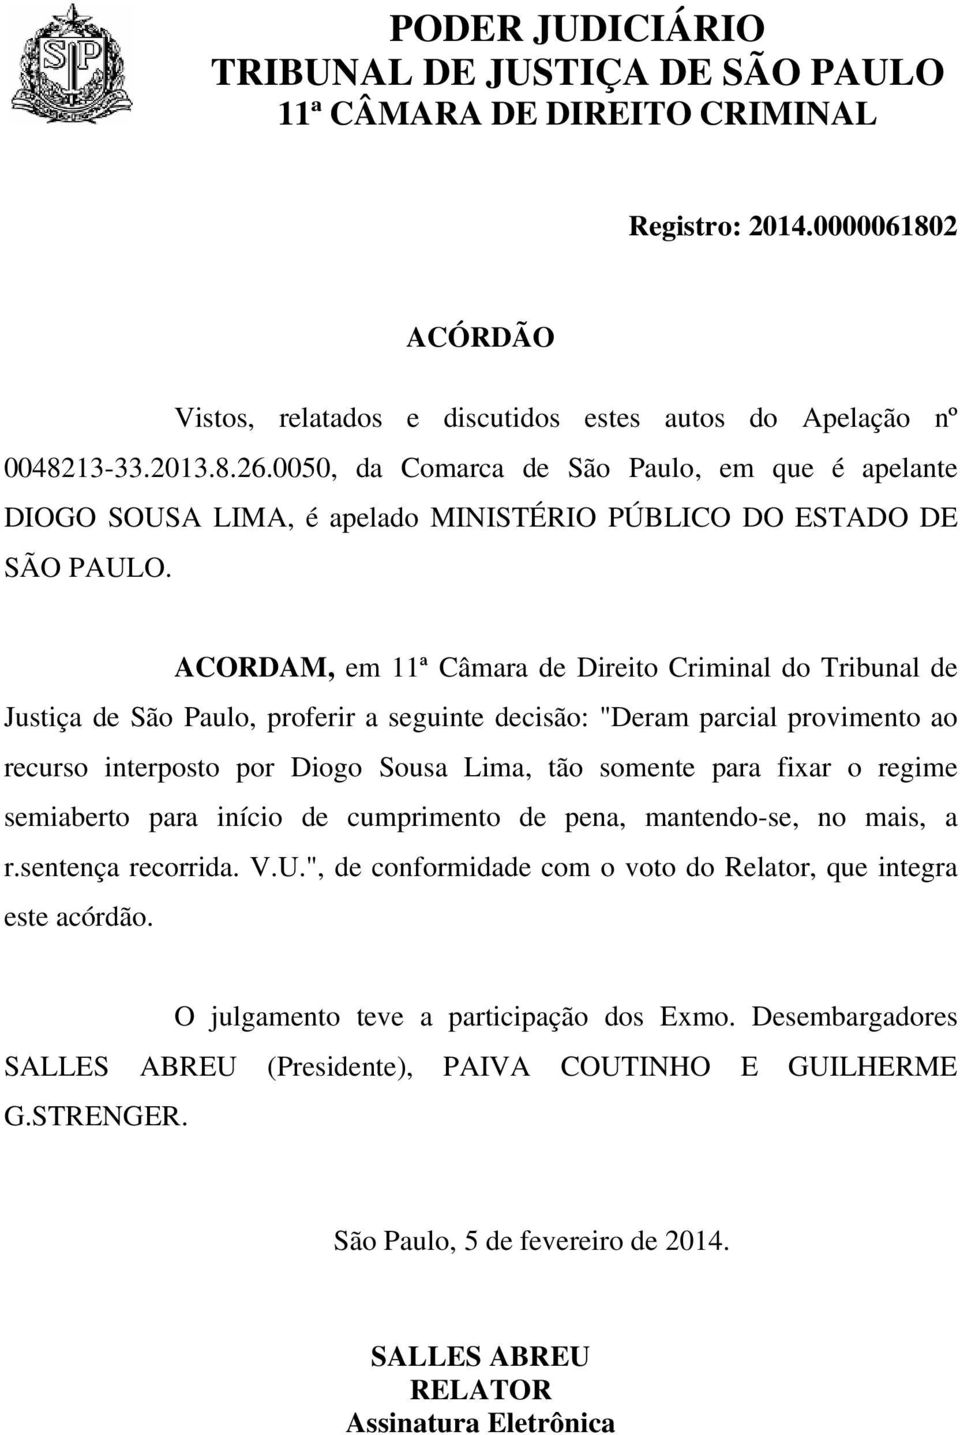 ACORDAM, em 11ª Câmara de Direito Criminal do Tribunal de Justiça de São Paulo, proferir a seguinte decisão: "Deram parcial provimento ao recurso interposto por Diogo Sousa Lima, tão somente para